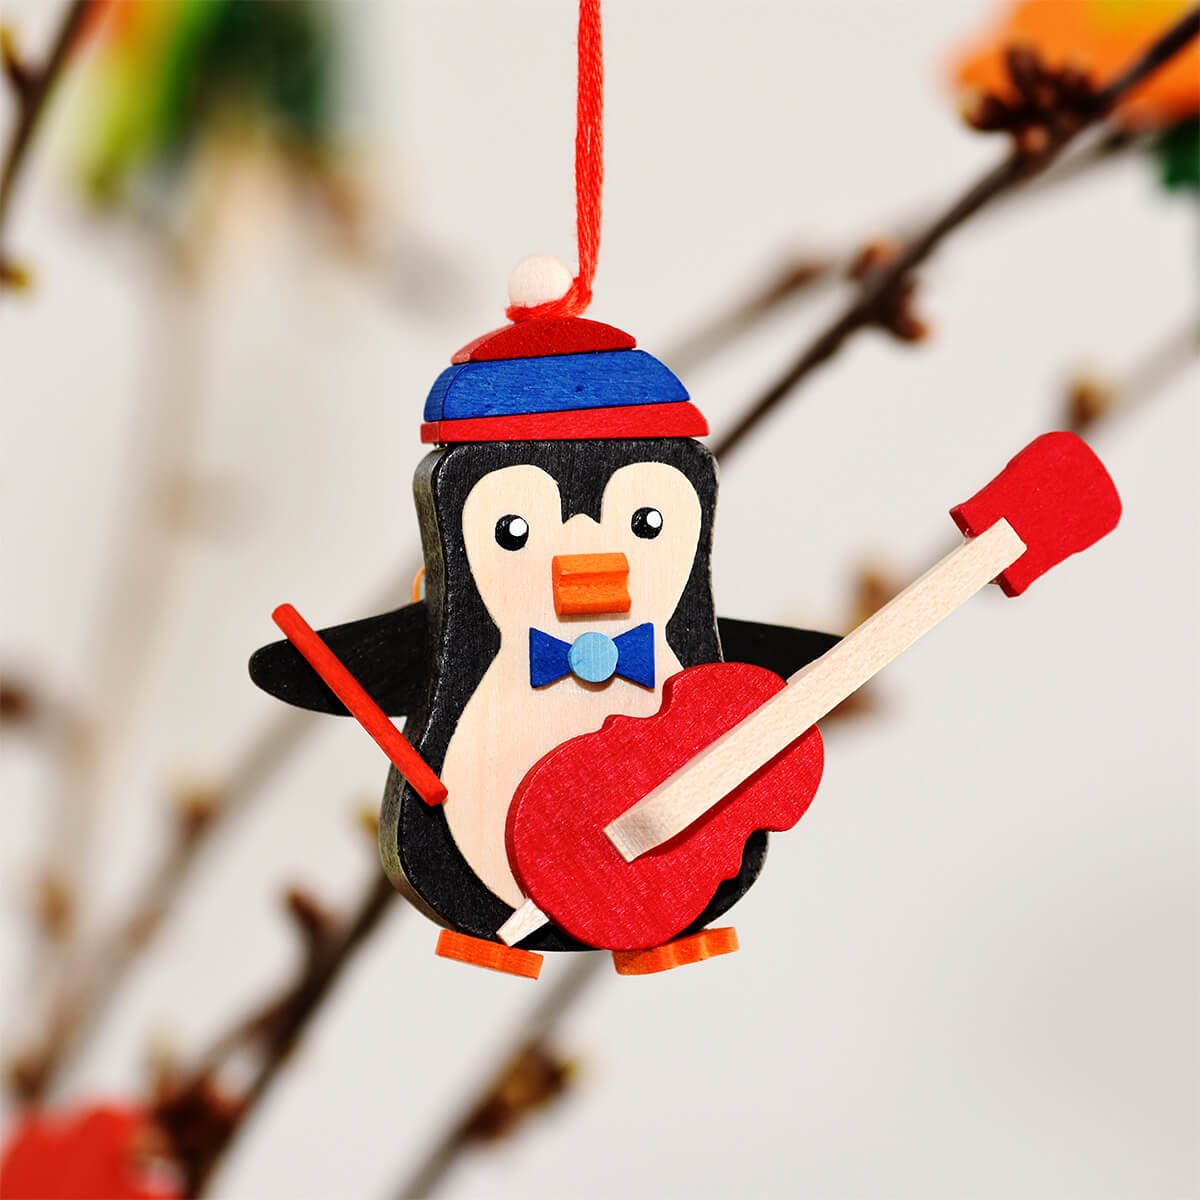 Pinguin als Baumschmuck mit Palette